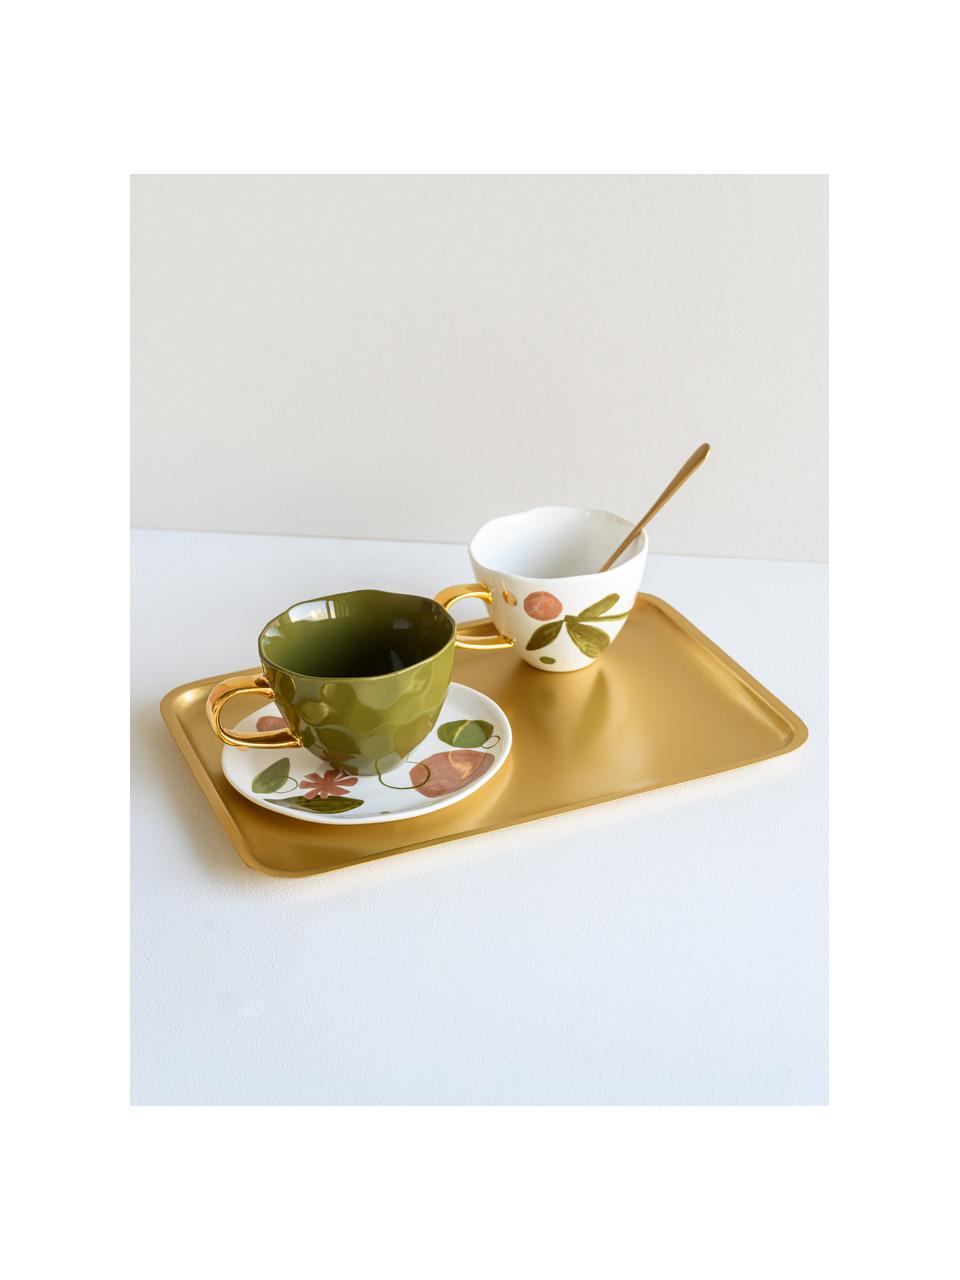 Beschilderde mok Good Morning Expressive met goudkleurig handvat, Beenderporselein, Wit, roze, groen, goudkleurig, Ø 11 x H 9 cm